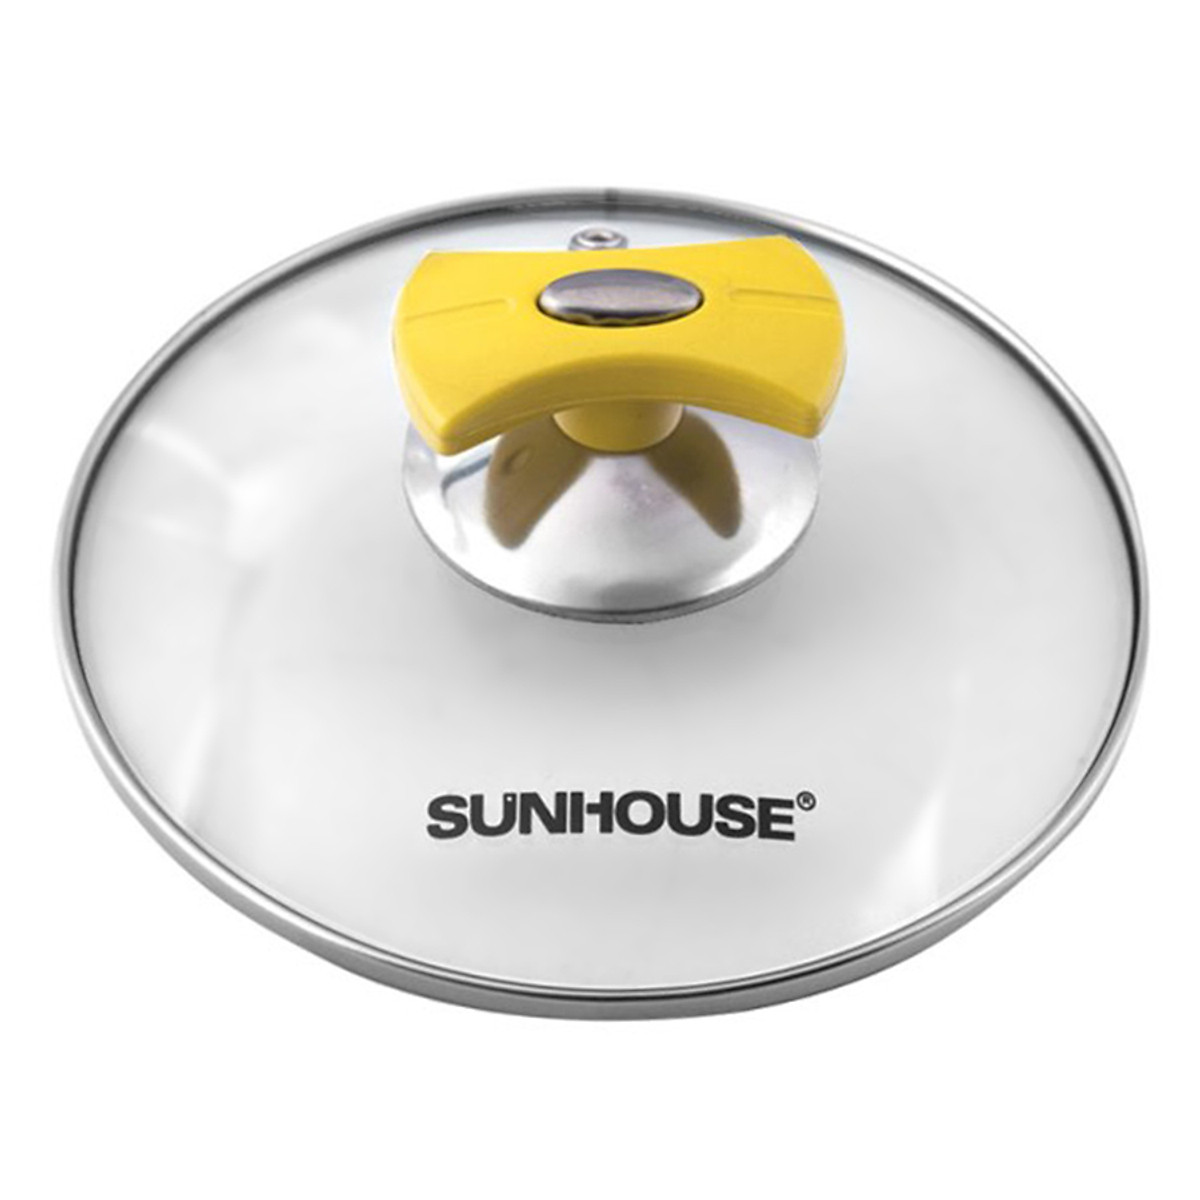 Bộ Nồi Inox 5 Đáy Sunhouse SH787 - Dùng trên mọi loại bếp - Hàng chính hãng